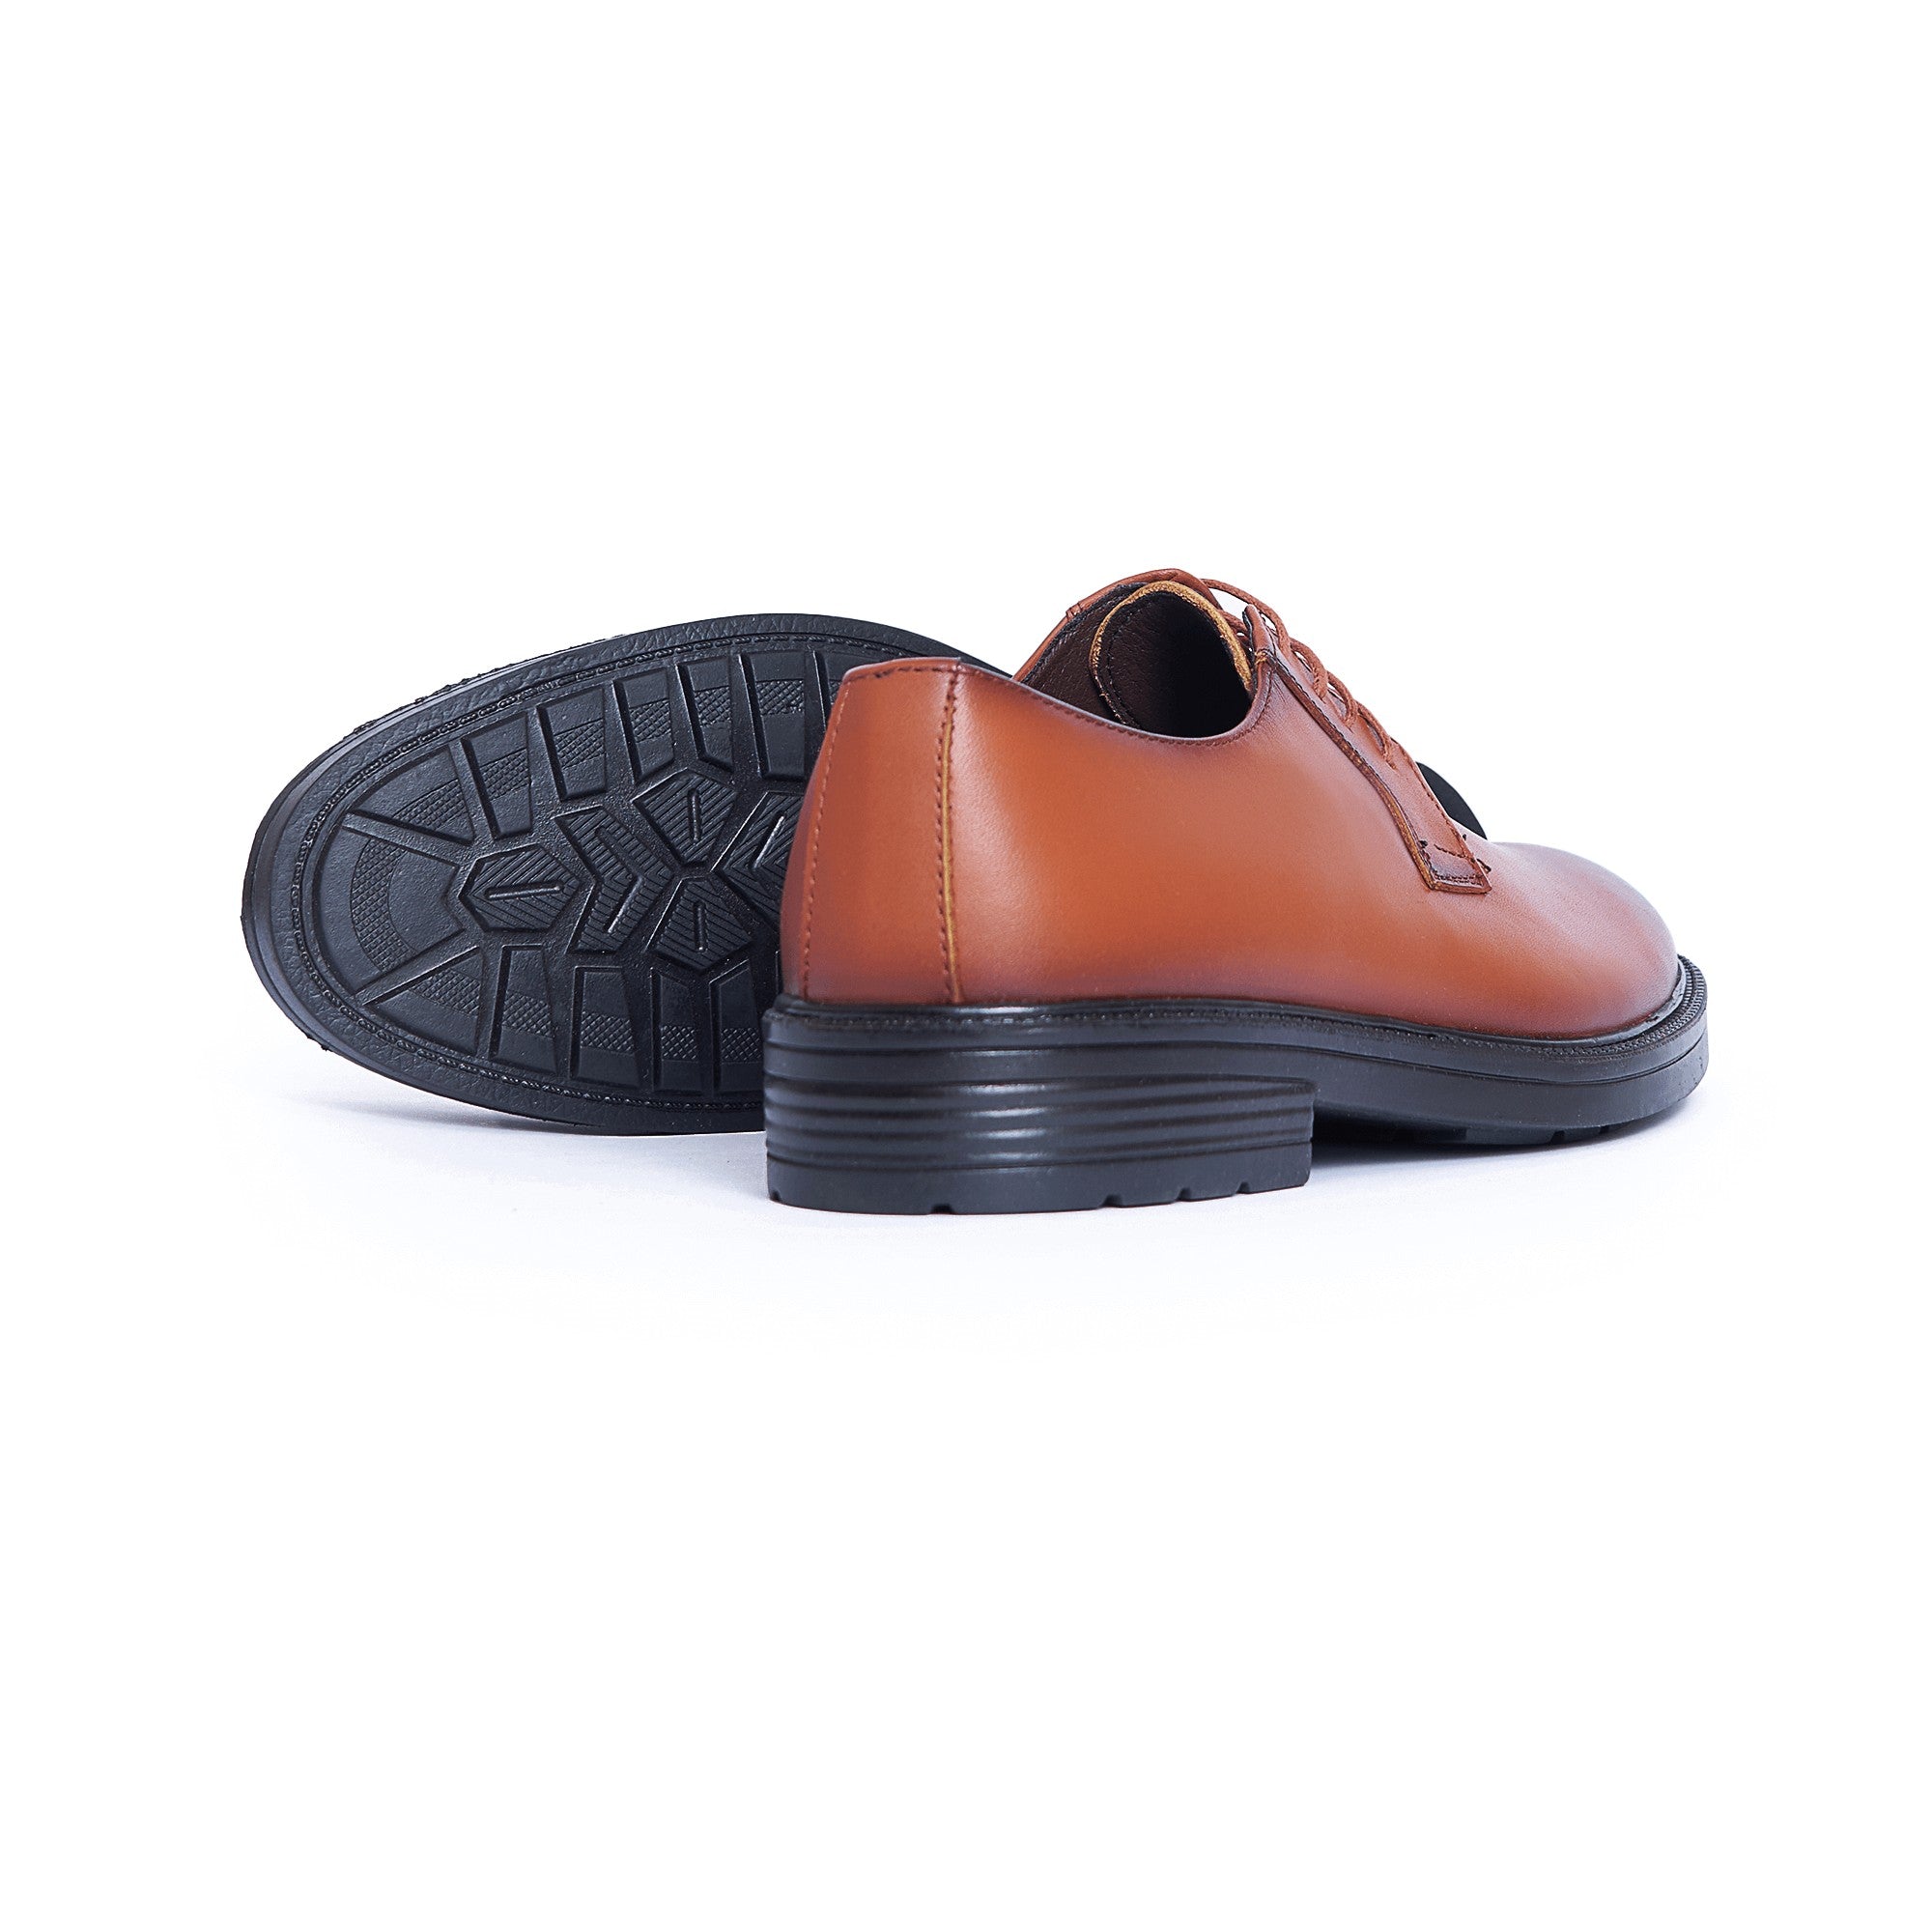    AS17 حذاء رجالي هافان تصميم كلاسيك من الجلد الطبيعي من كوكا ستور موديل 